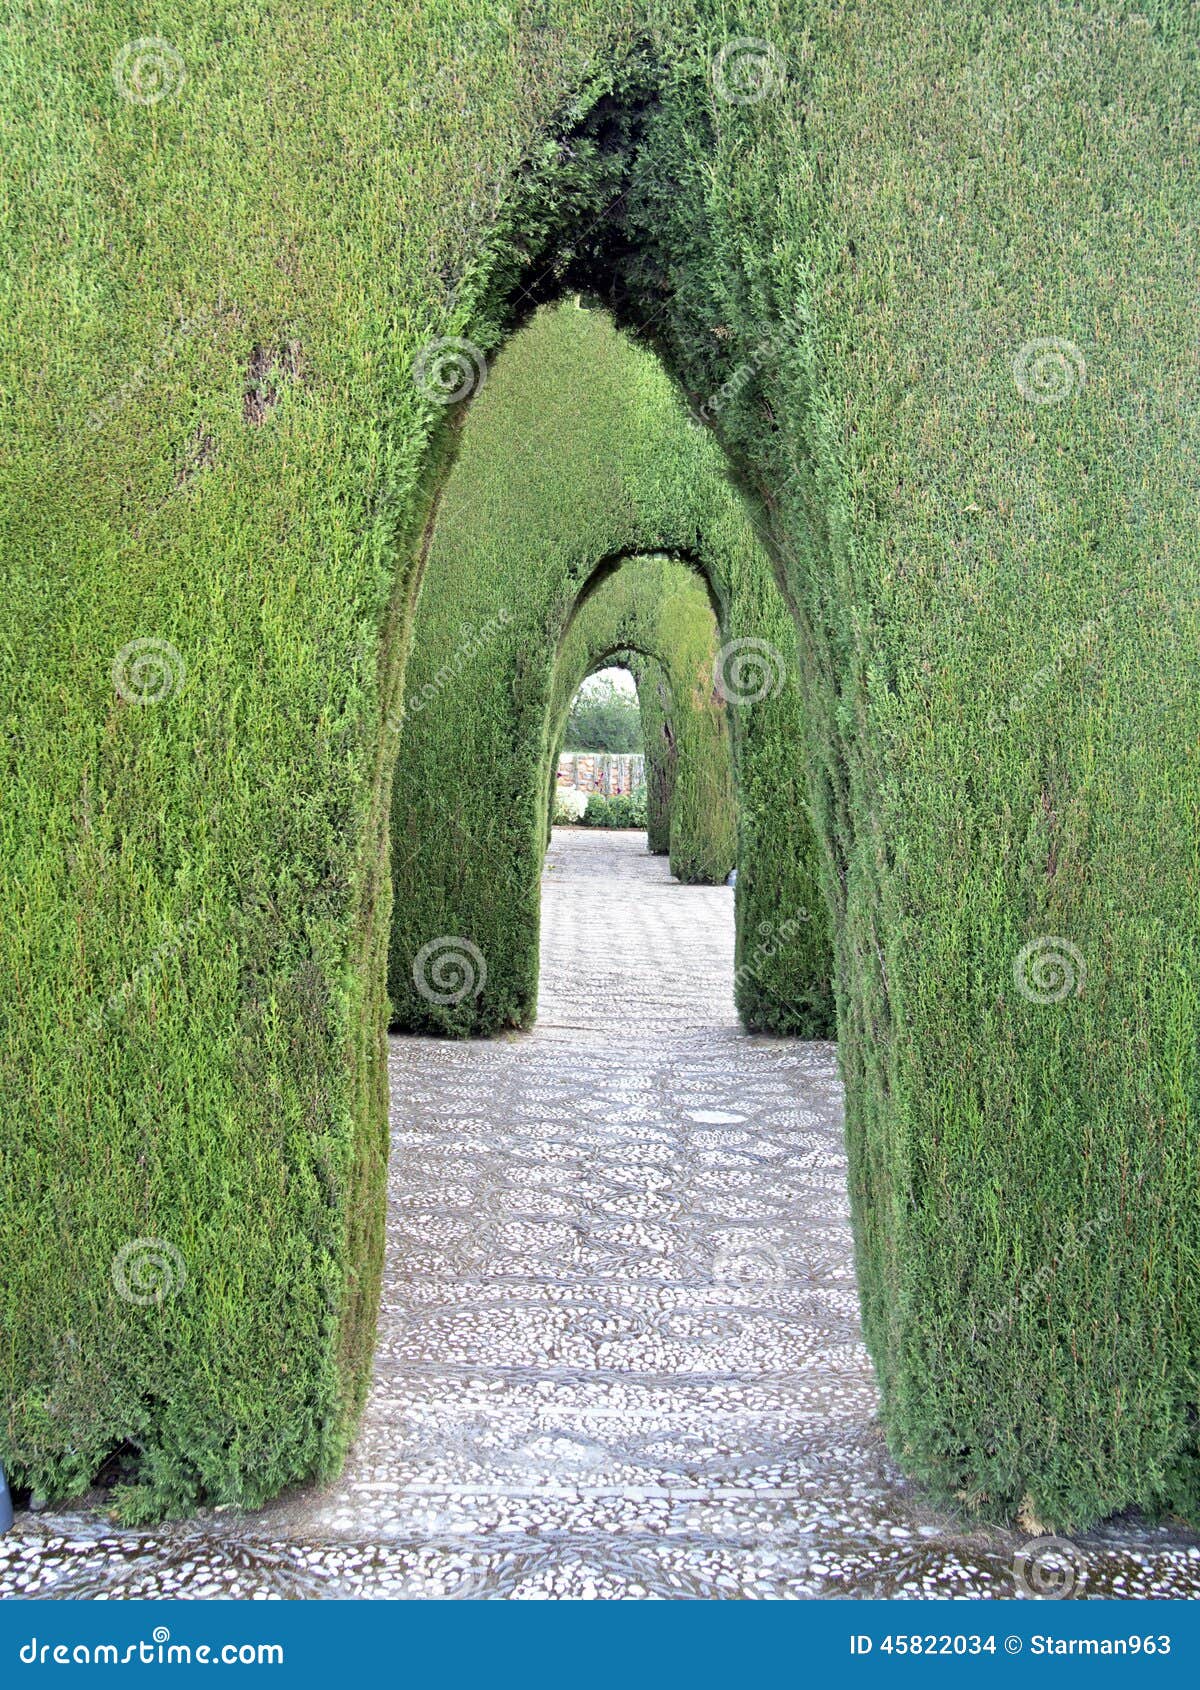 Alhambra Granada Decorative Ornamental Garden with Bush Arches Stock ...